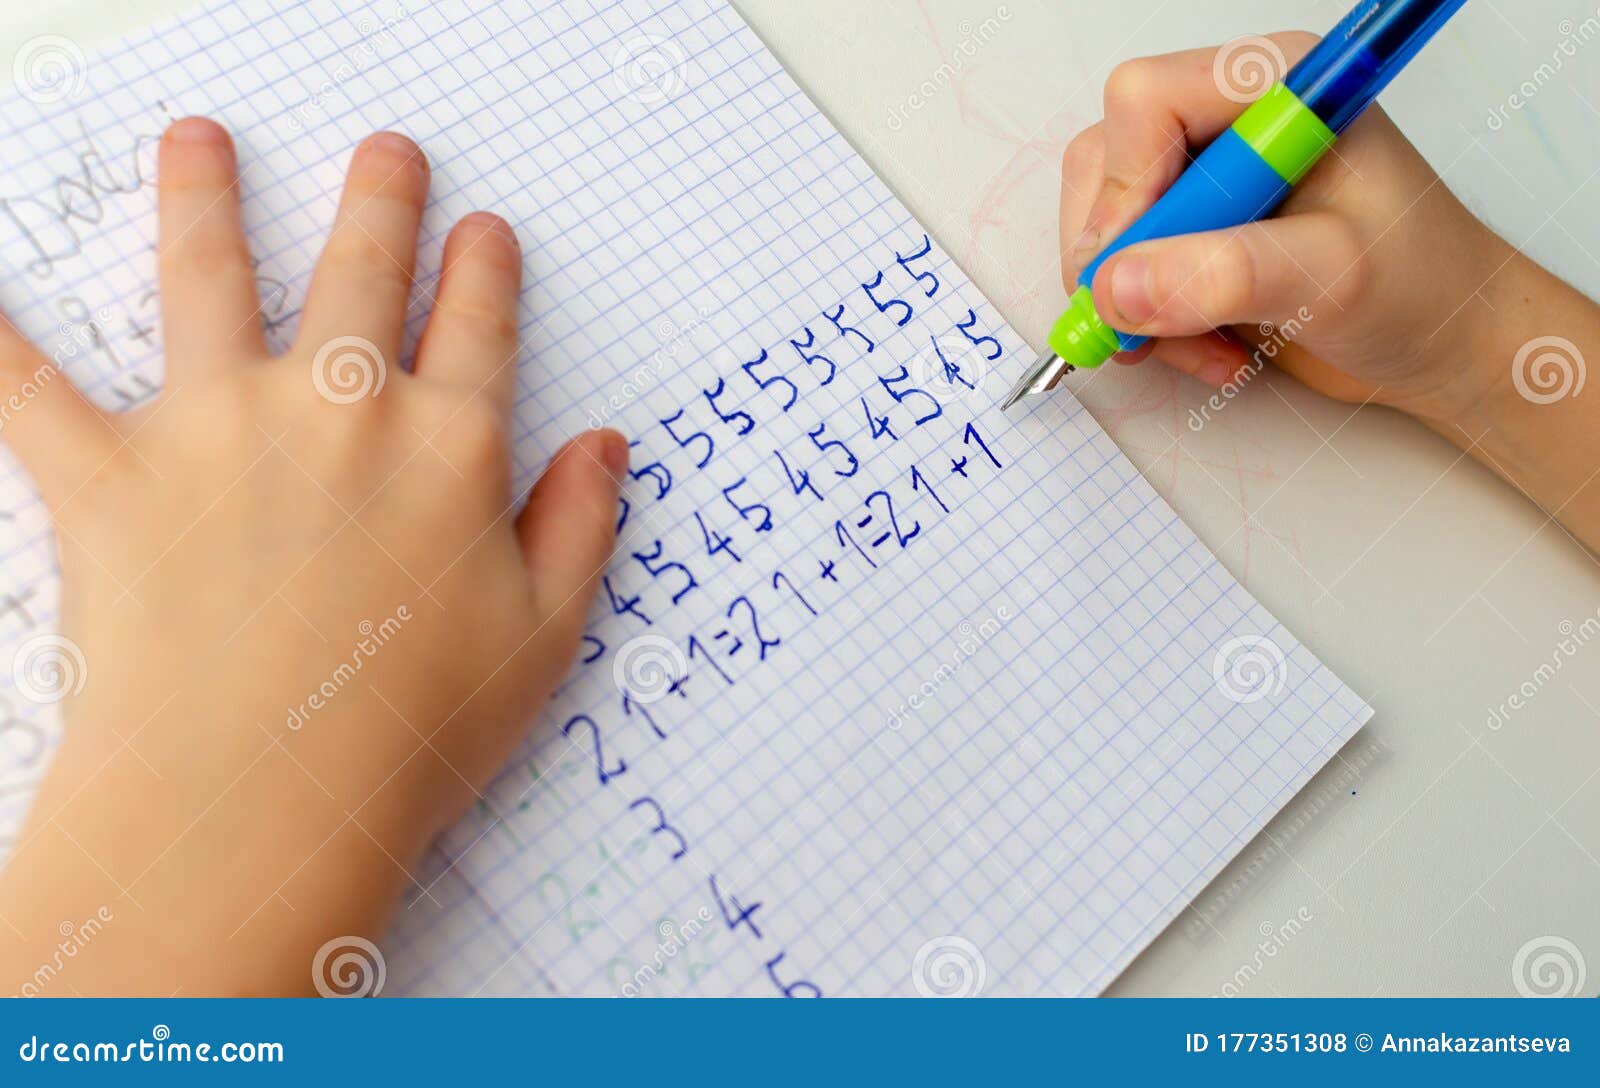 Do math homework in pen